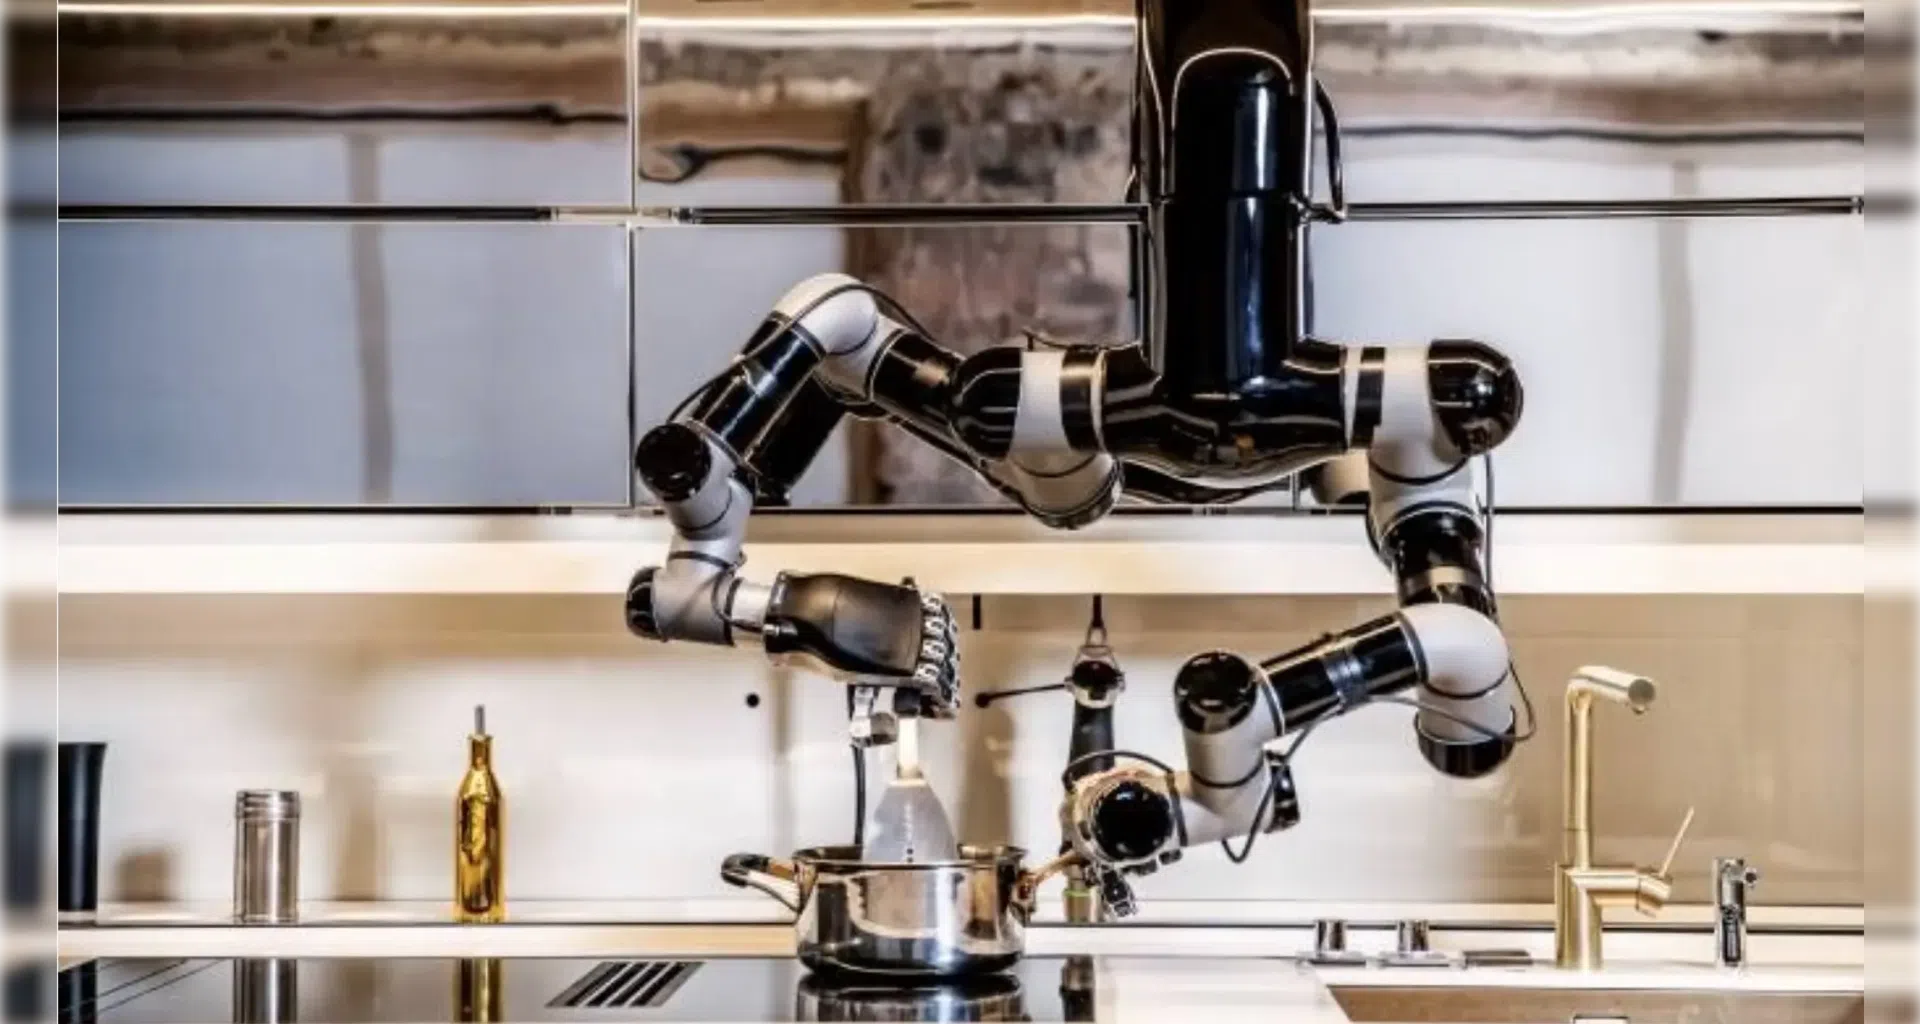 14 robôs que estão revolucionando bares e restaurantes. Os robôs invadiram as cozinhas! Conheça os modelos de destaque, preços, fabricantes e o panorama da robótica no setor de alimentos e bebidas